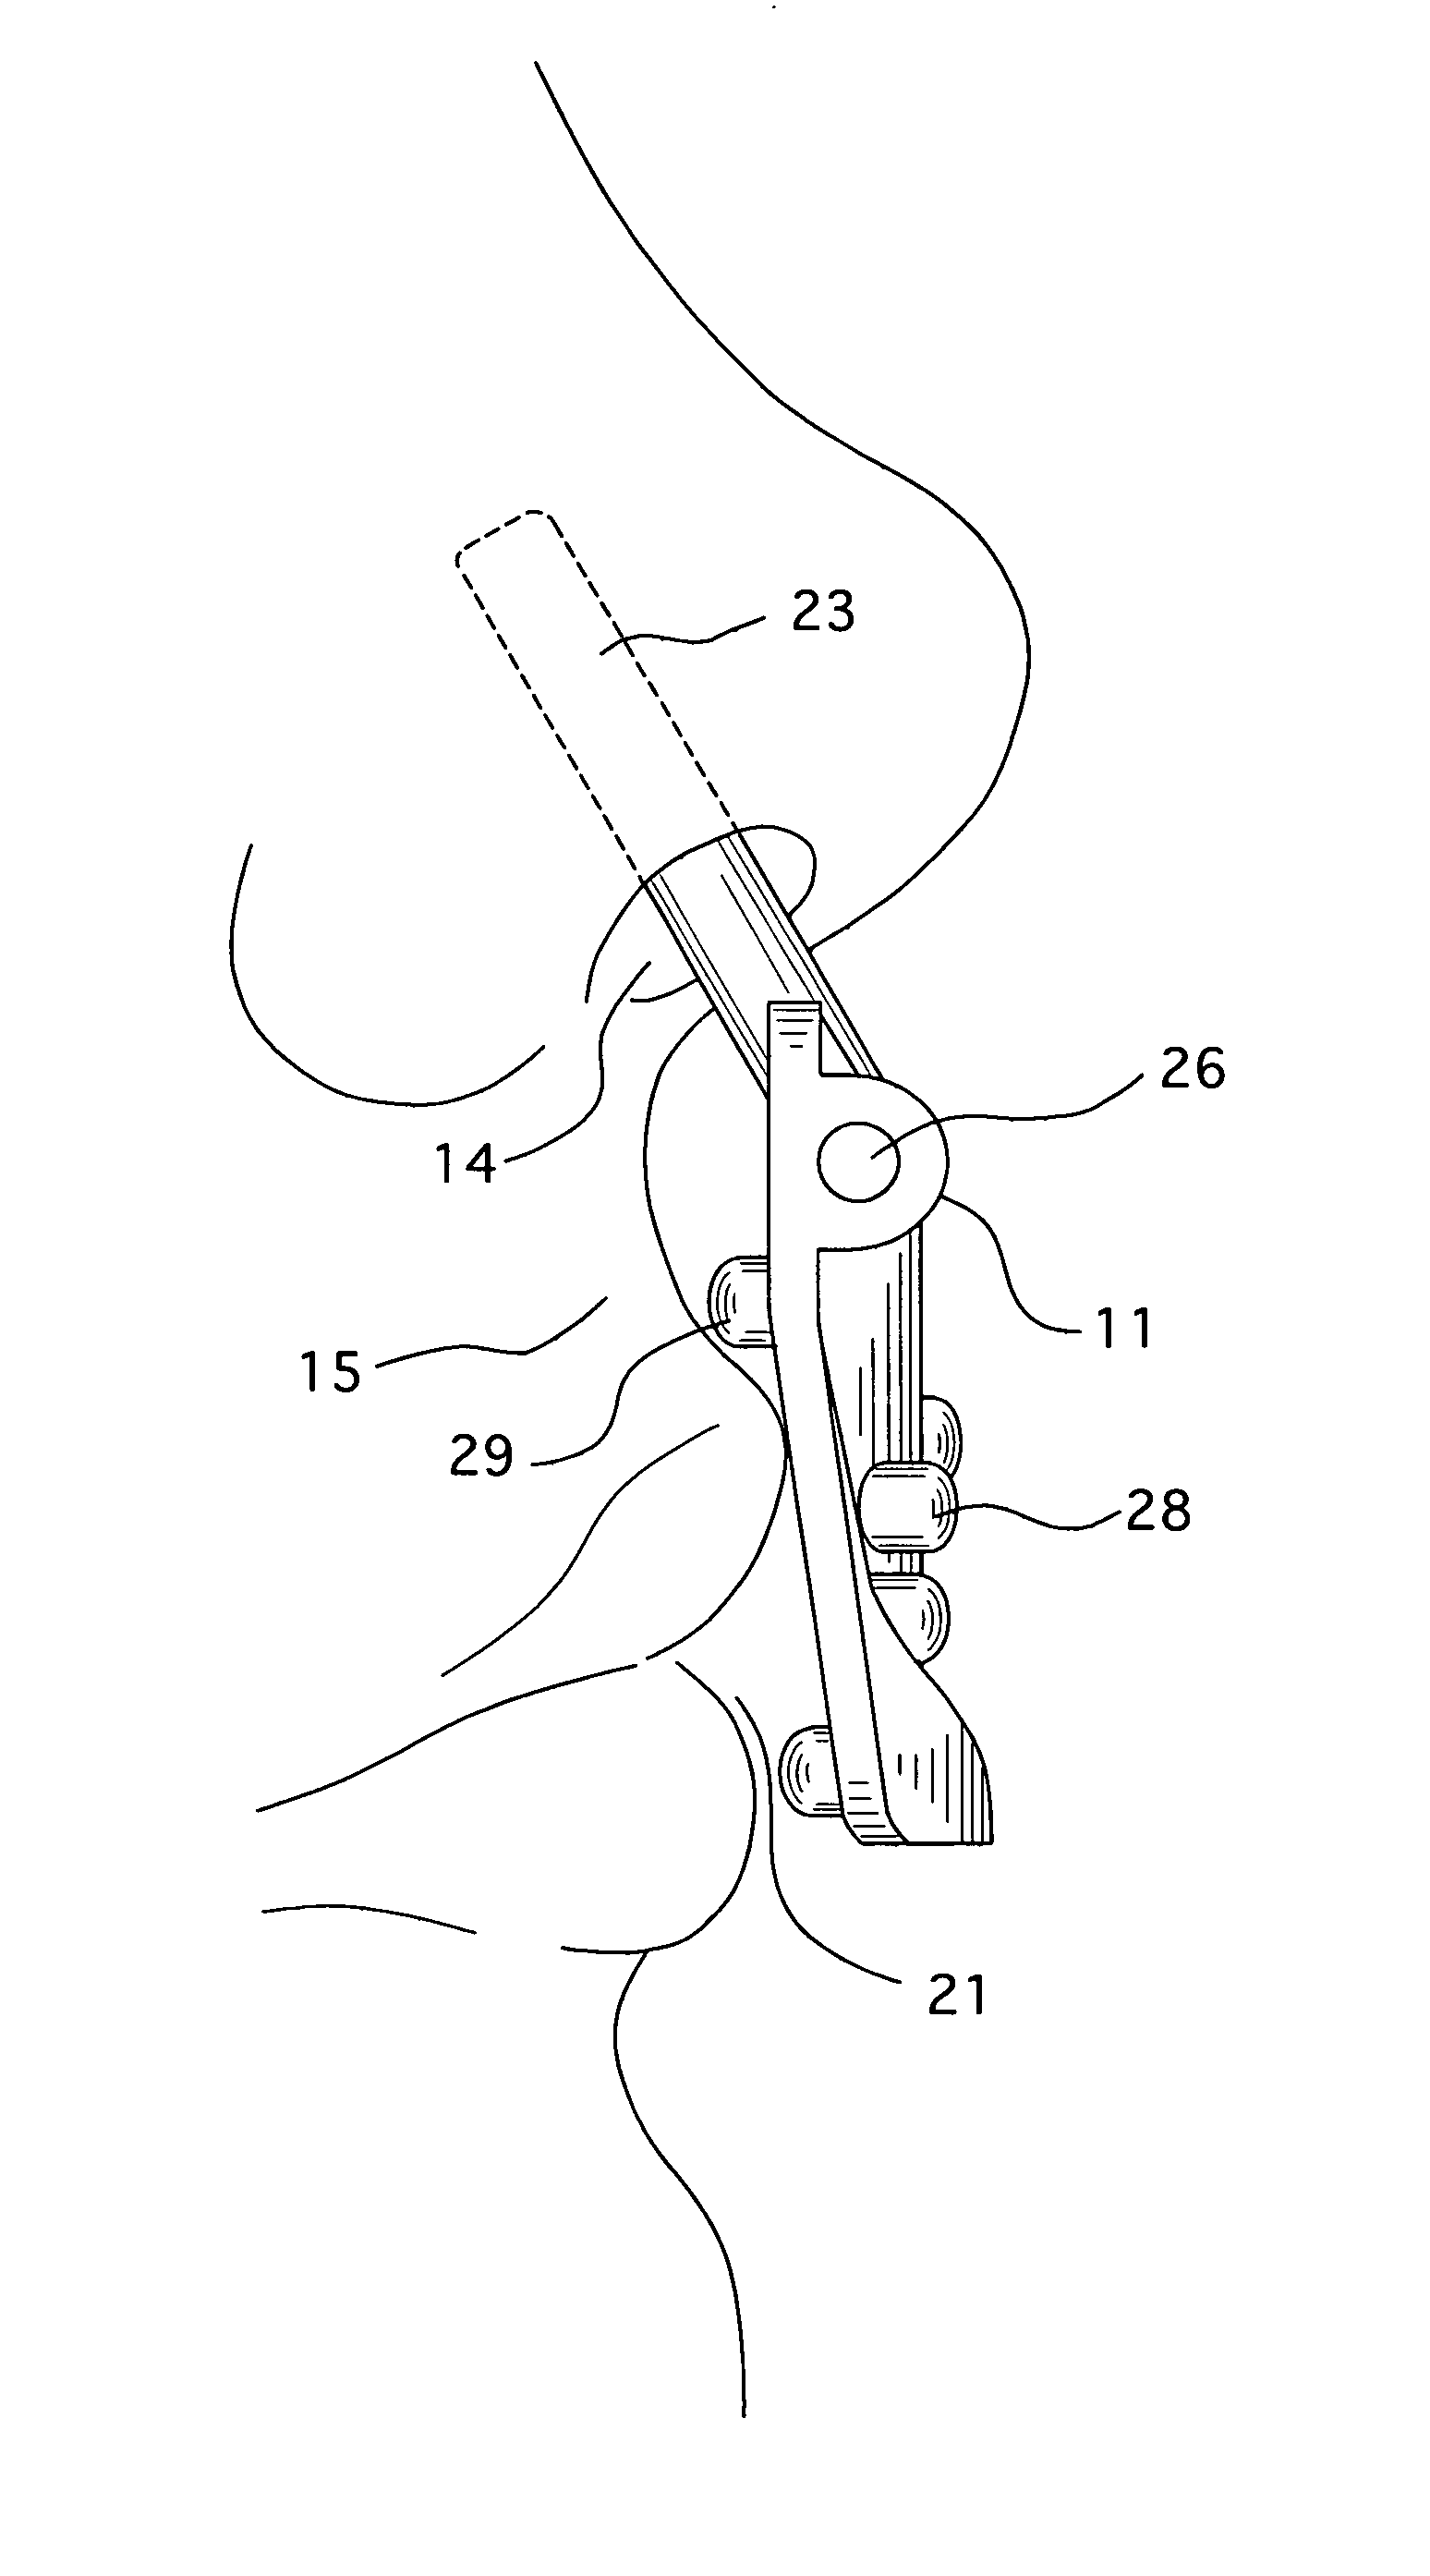 Oral/nasal cannula manifold